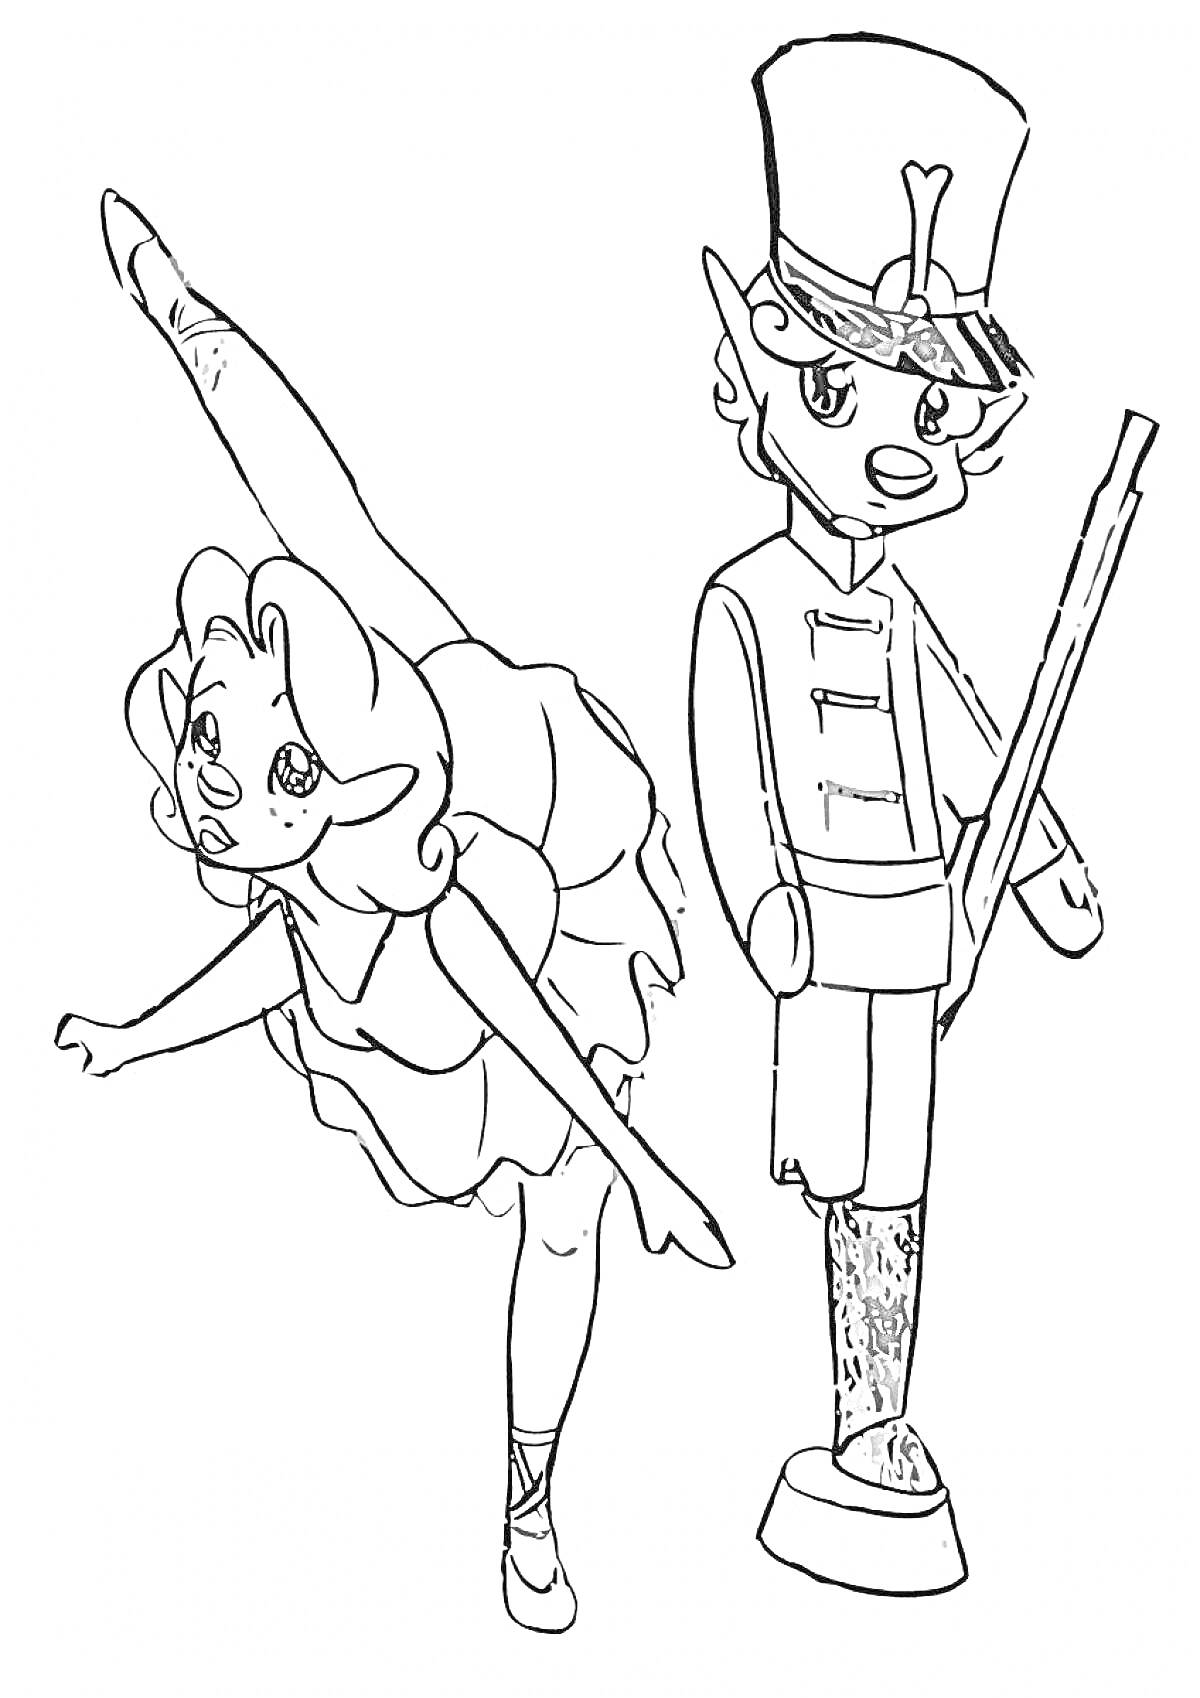 Раскраска Балерина и оловянный солдатик с ружьем